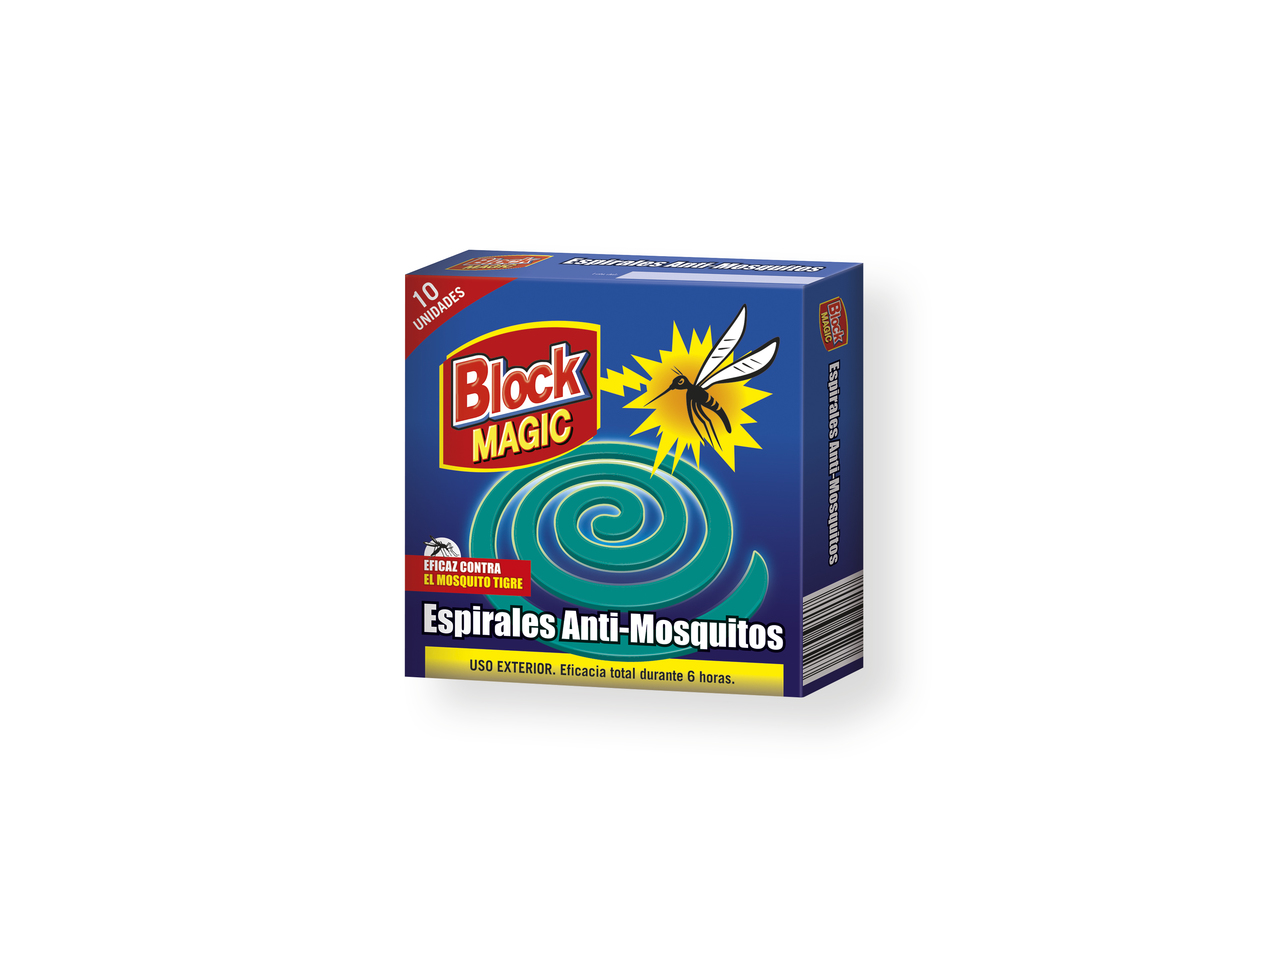 'Block magic(R)' Espirales antimosquitos